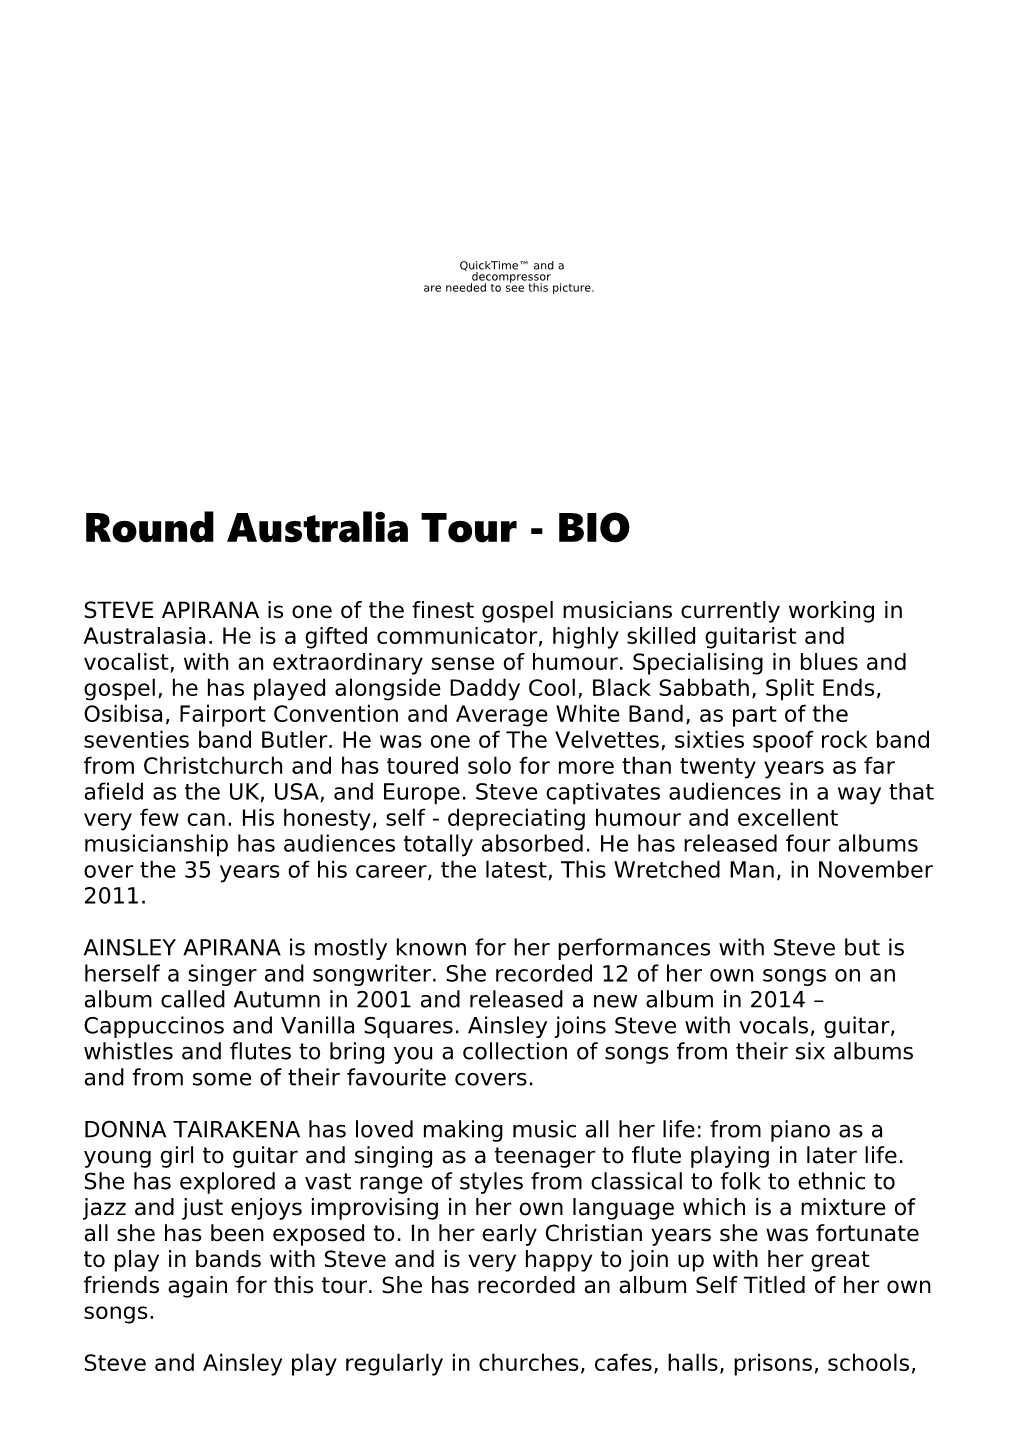 Round Australia Tour - BIO